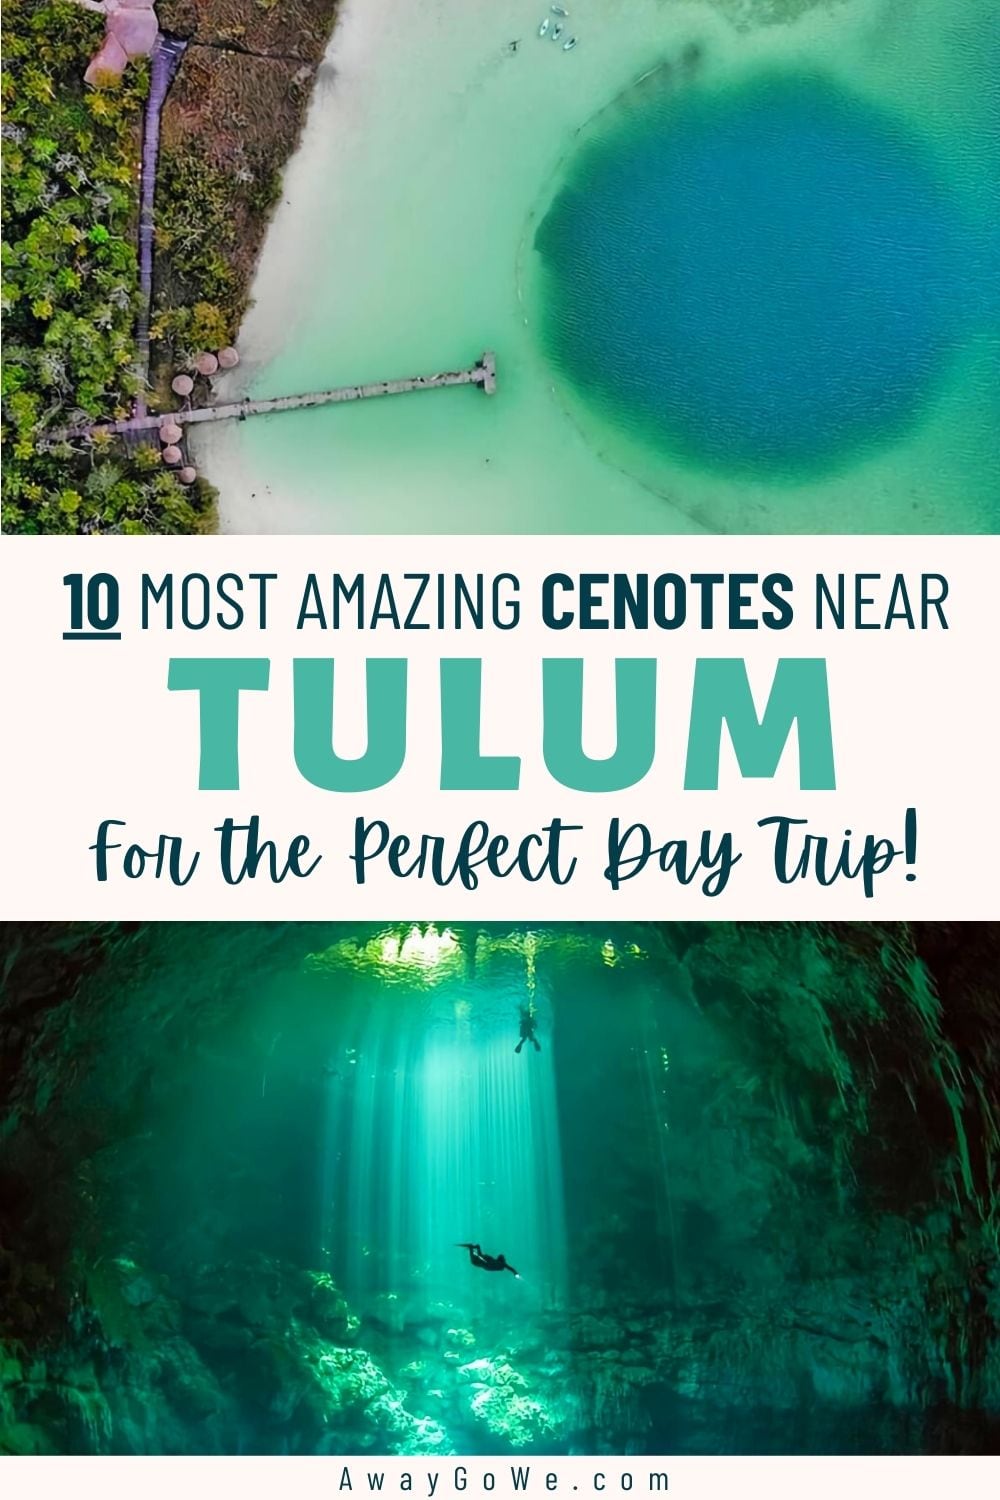 Tulum cenotes